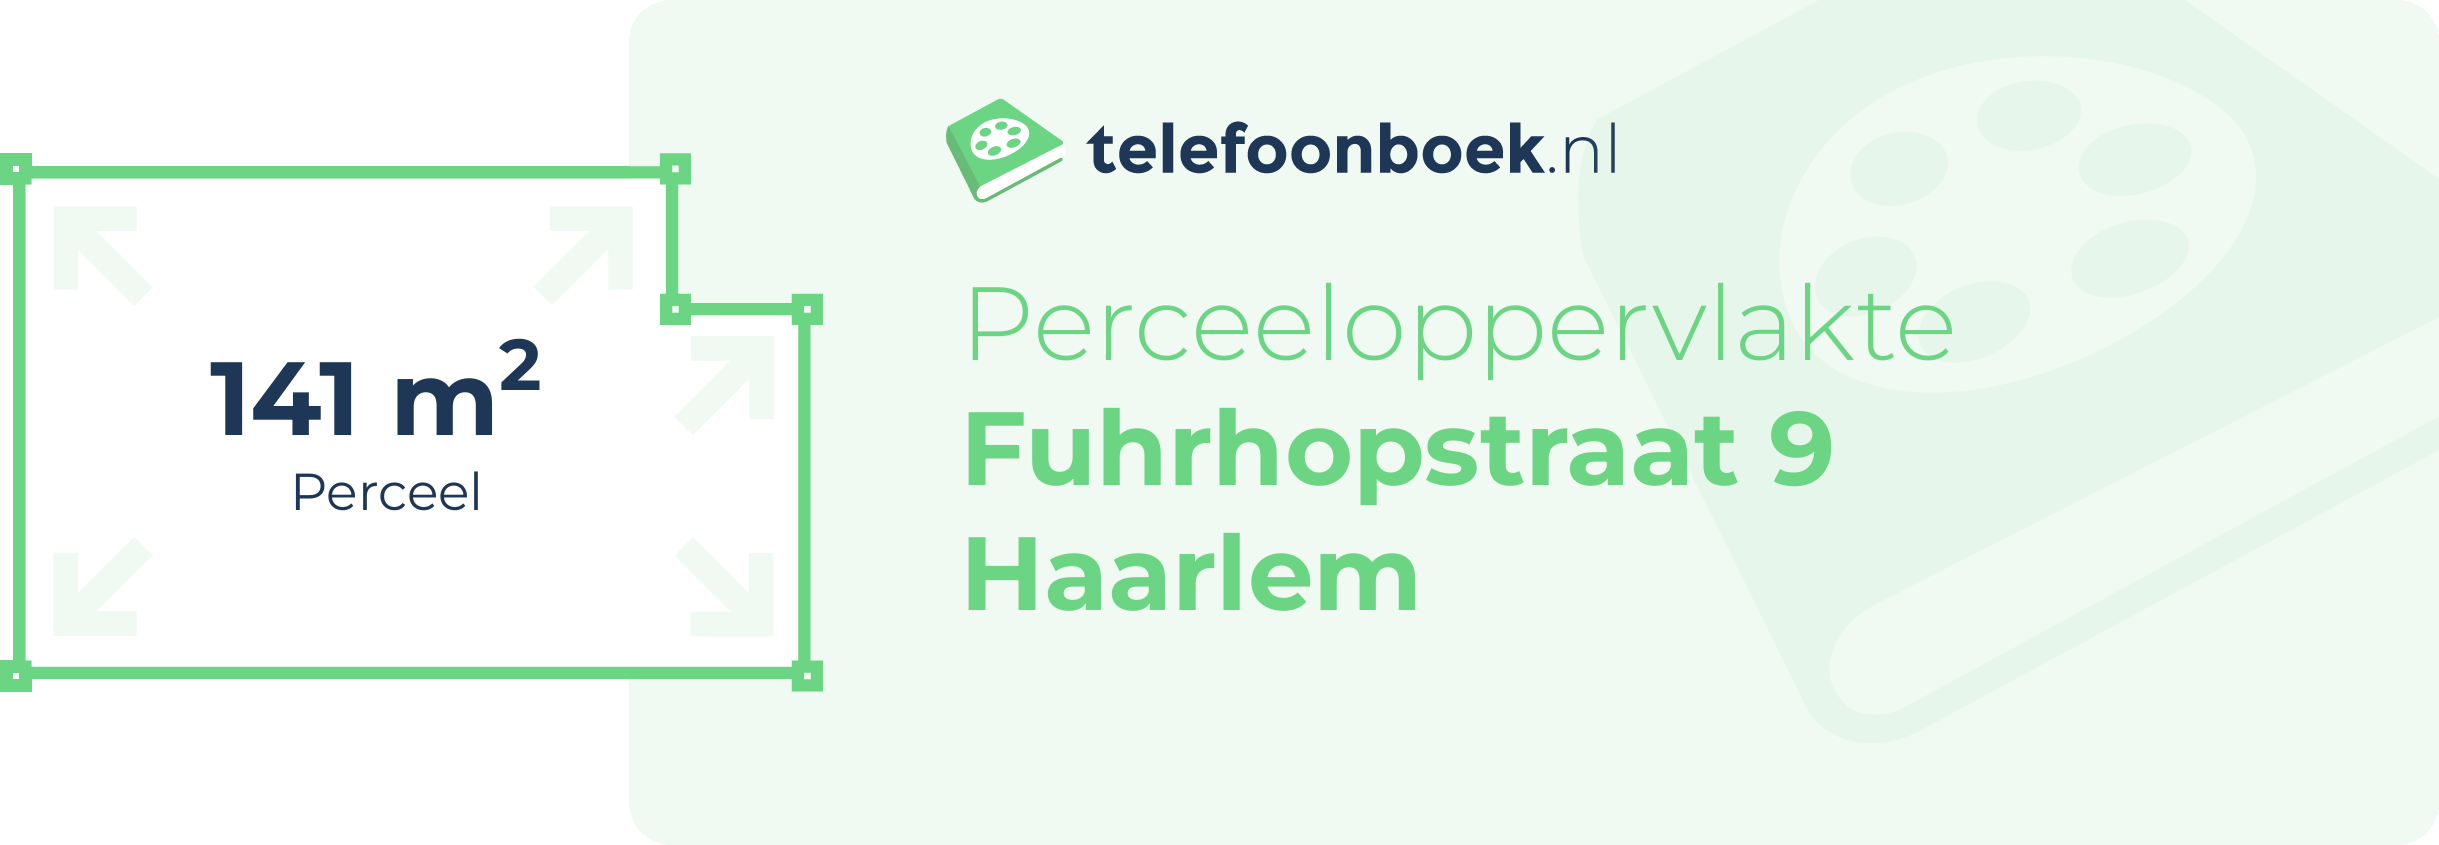 Perceeloppervlakte Fuhrhopstraat 9 Haarlem